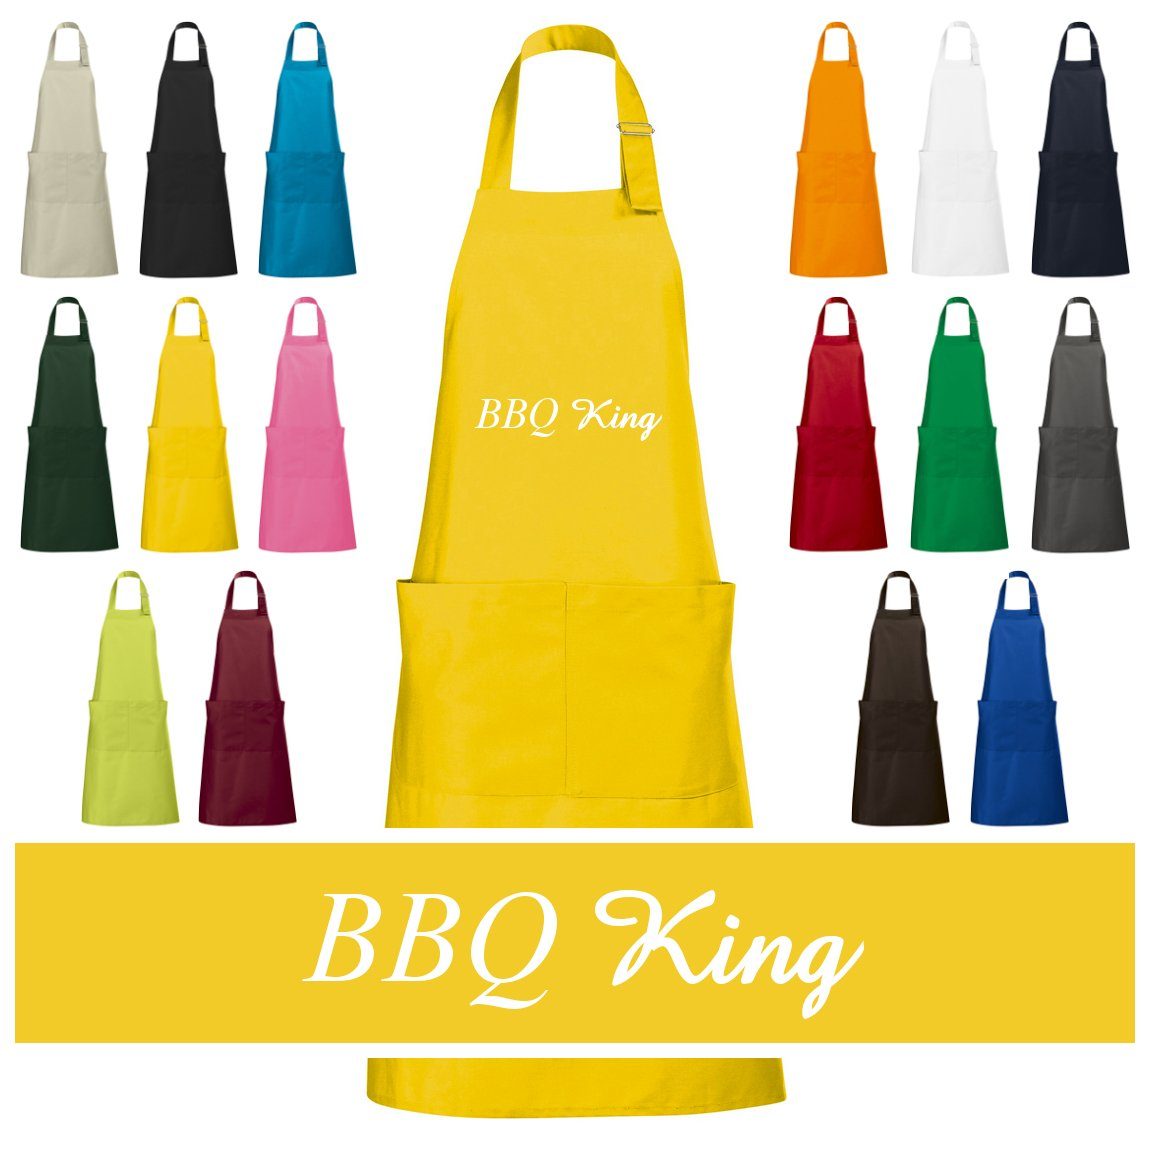 Schnoschi Grillschürze Hochwertige Küchenschürze mit BBQ King bestickt, Stickerei mit BBQ King